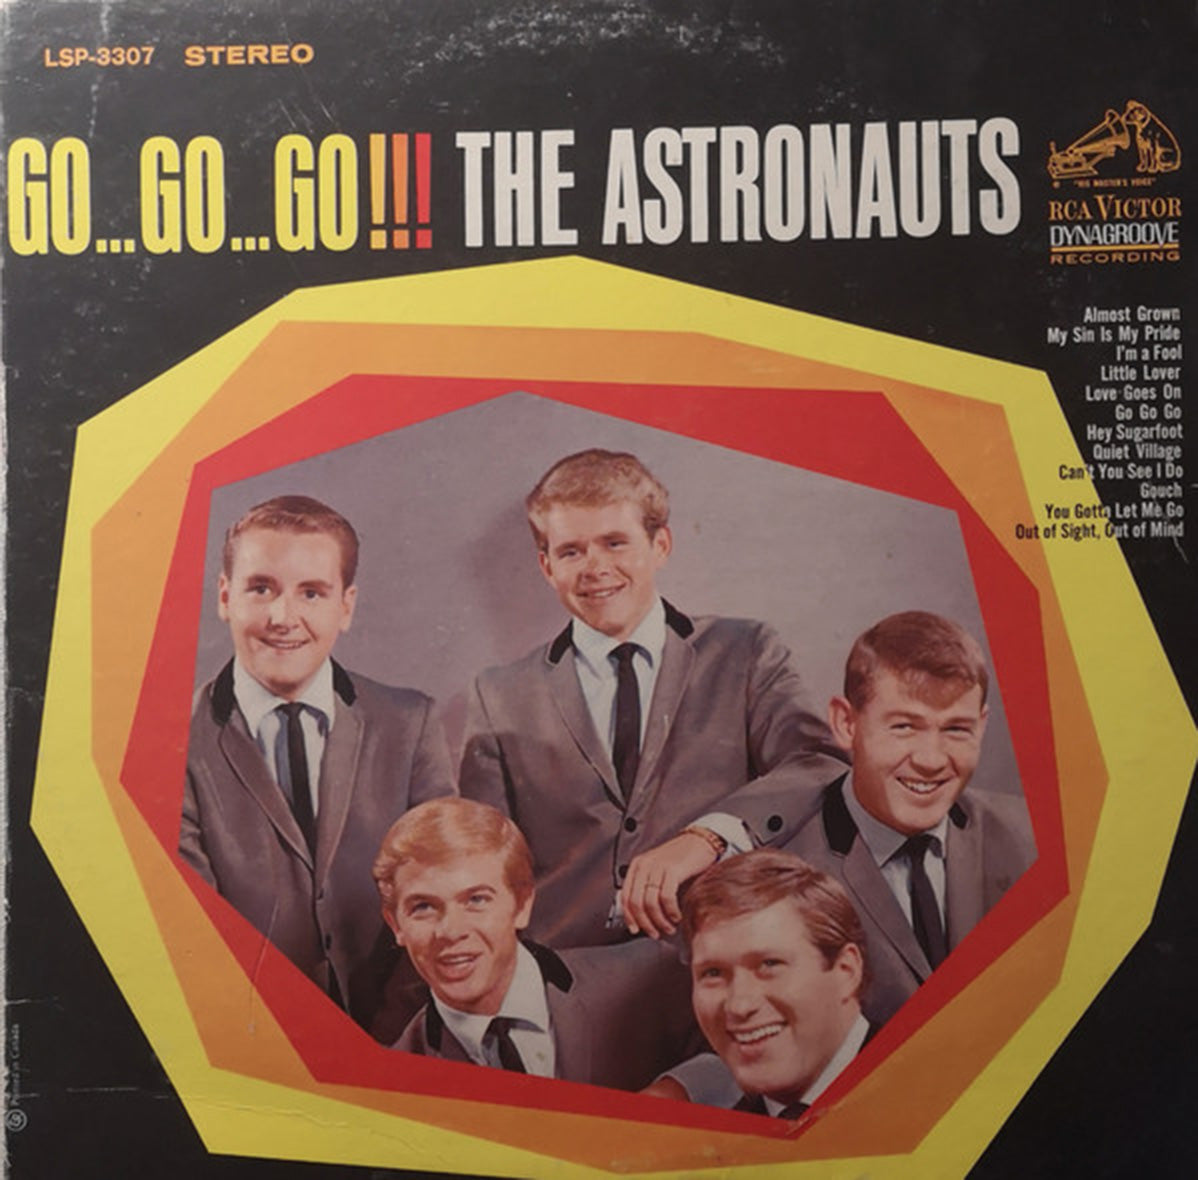 The Astronauts – Go...Go...Go!!! 1965 Surf!